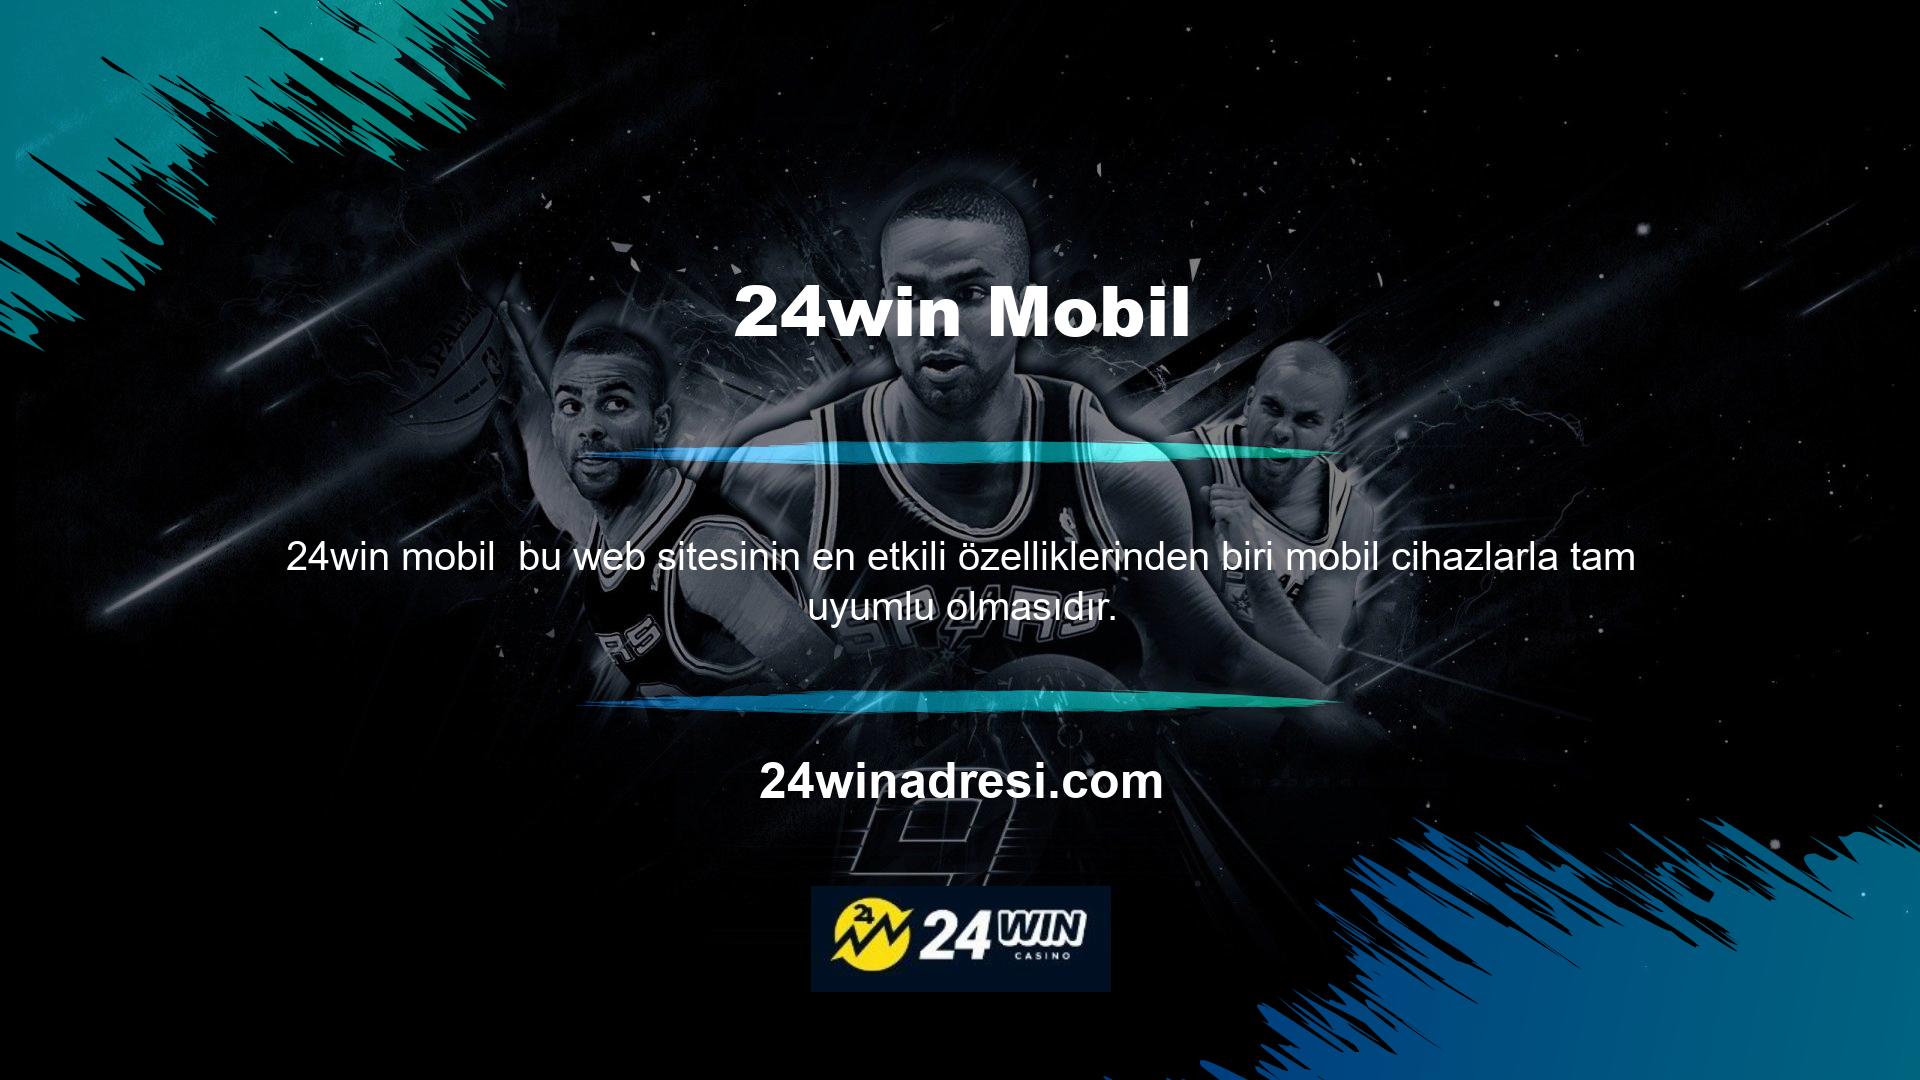 24win mobil uygulama sitesi sayesinde tüm üyeler sadece masaüstü veya dizüstü bilgisayarlarından değil, akıllı telefon ve tabletlerinden de siteden yararlanabilmektedir